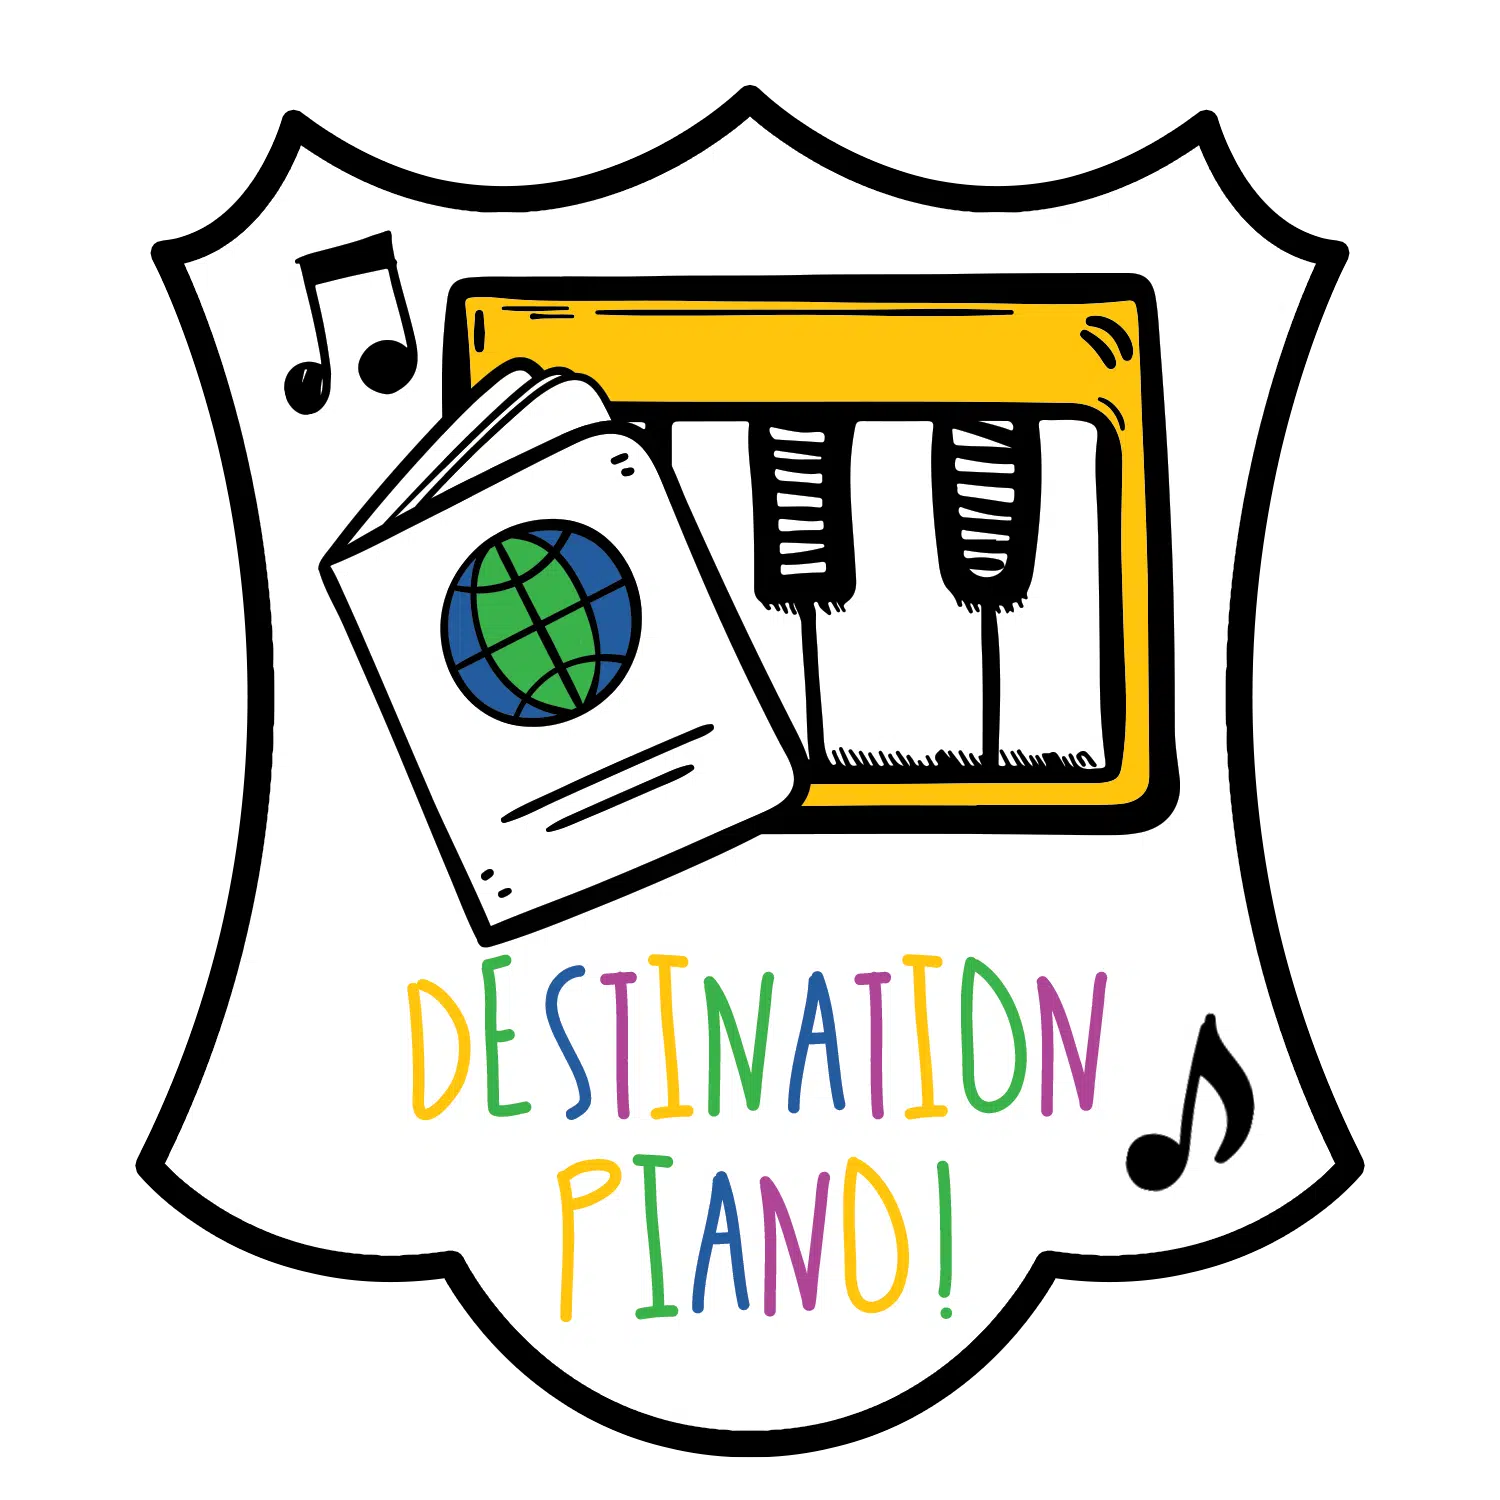 Destination Piano!